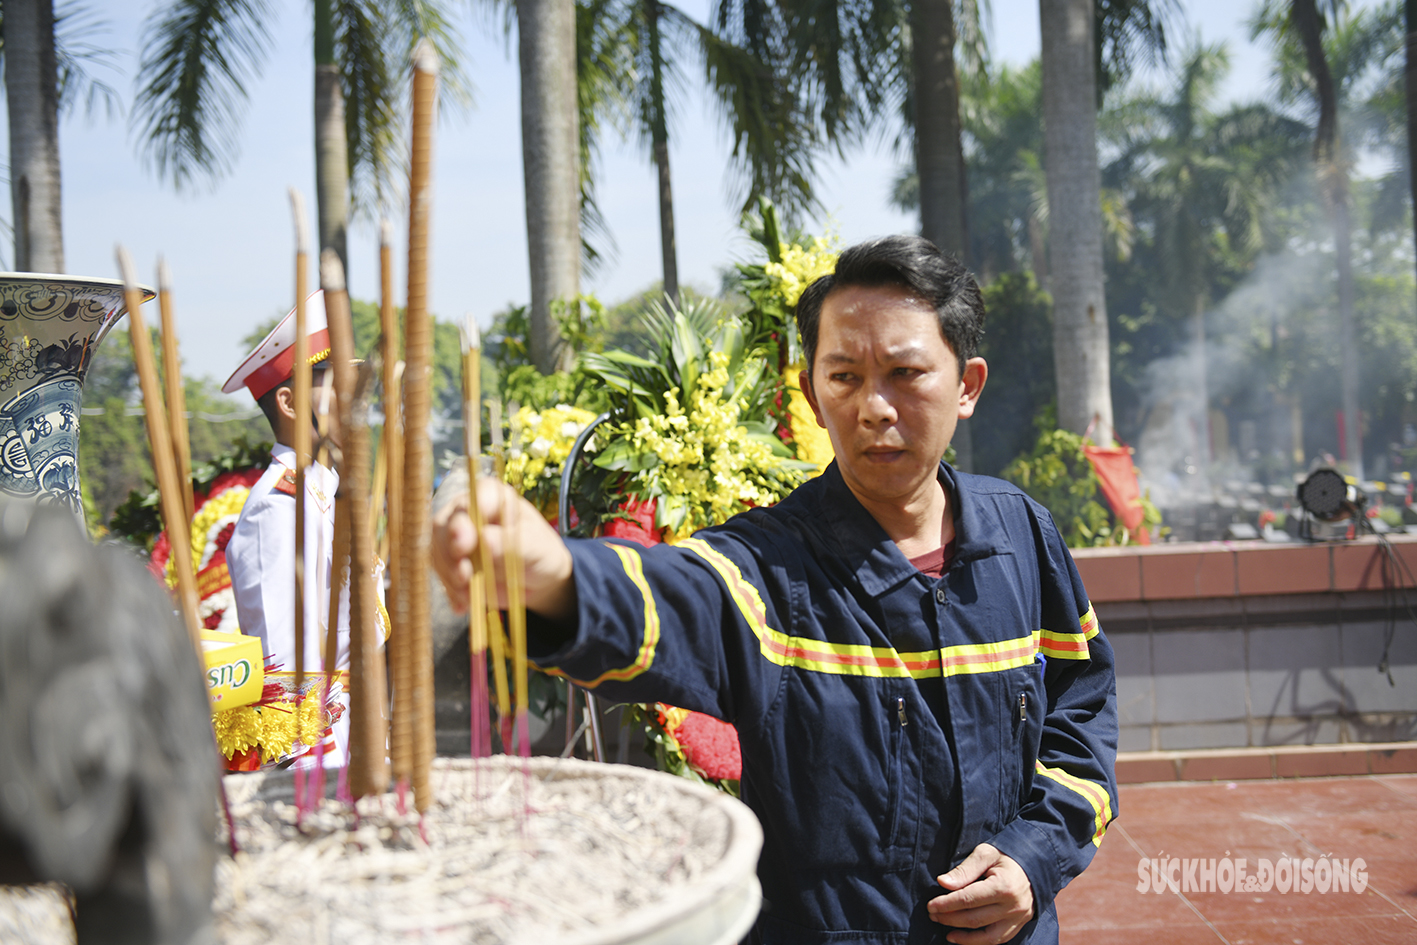 Xúc động hình ảnh các chiến sĩ PCCC thắp hương tri ân tại nghĩa trang Hà Nội - Ảnh 6.